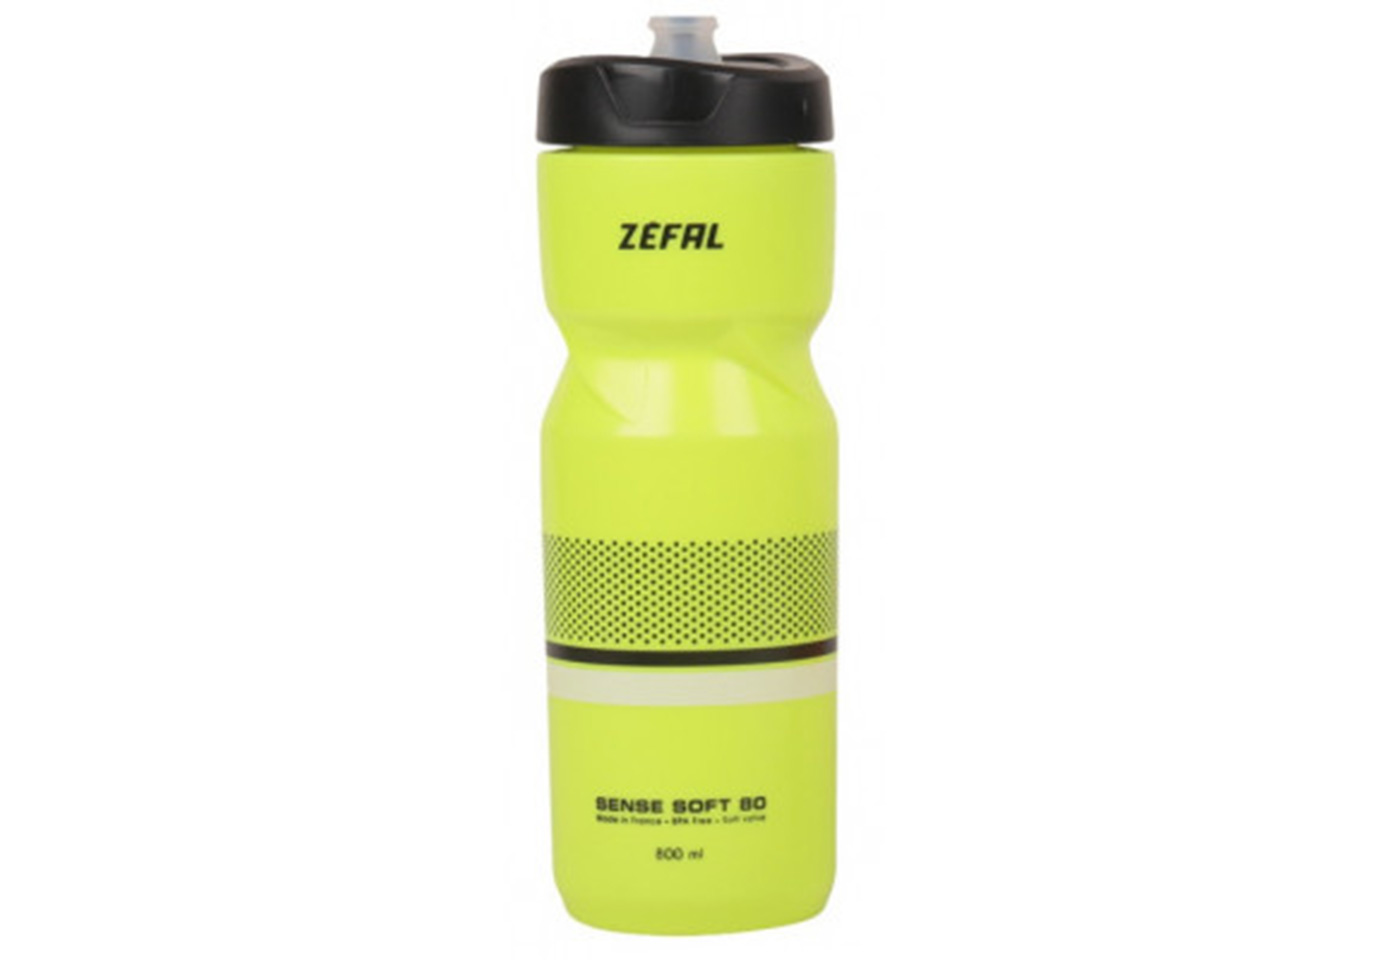 Zefal Sense Soft 80 (157I) Soft-Cap System, жовта